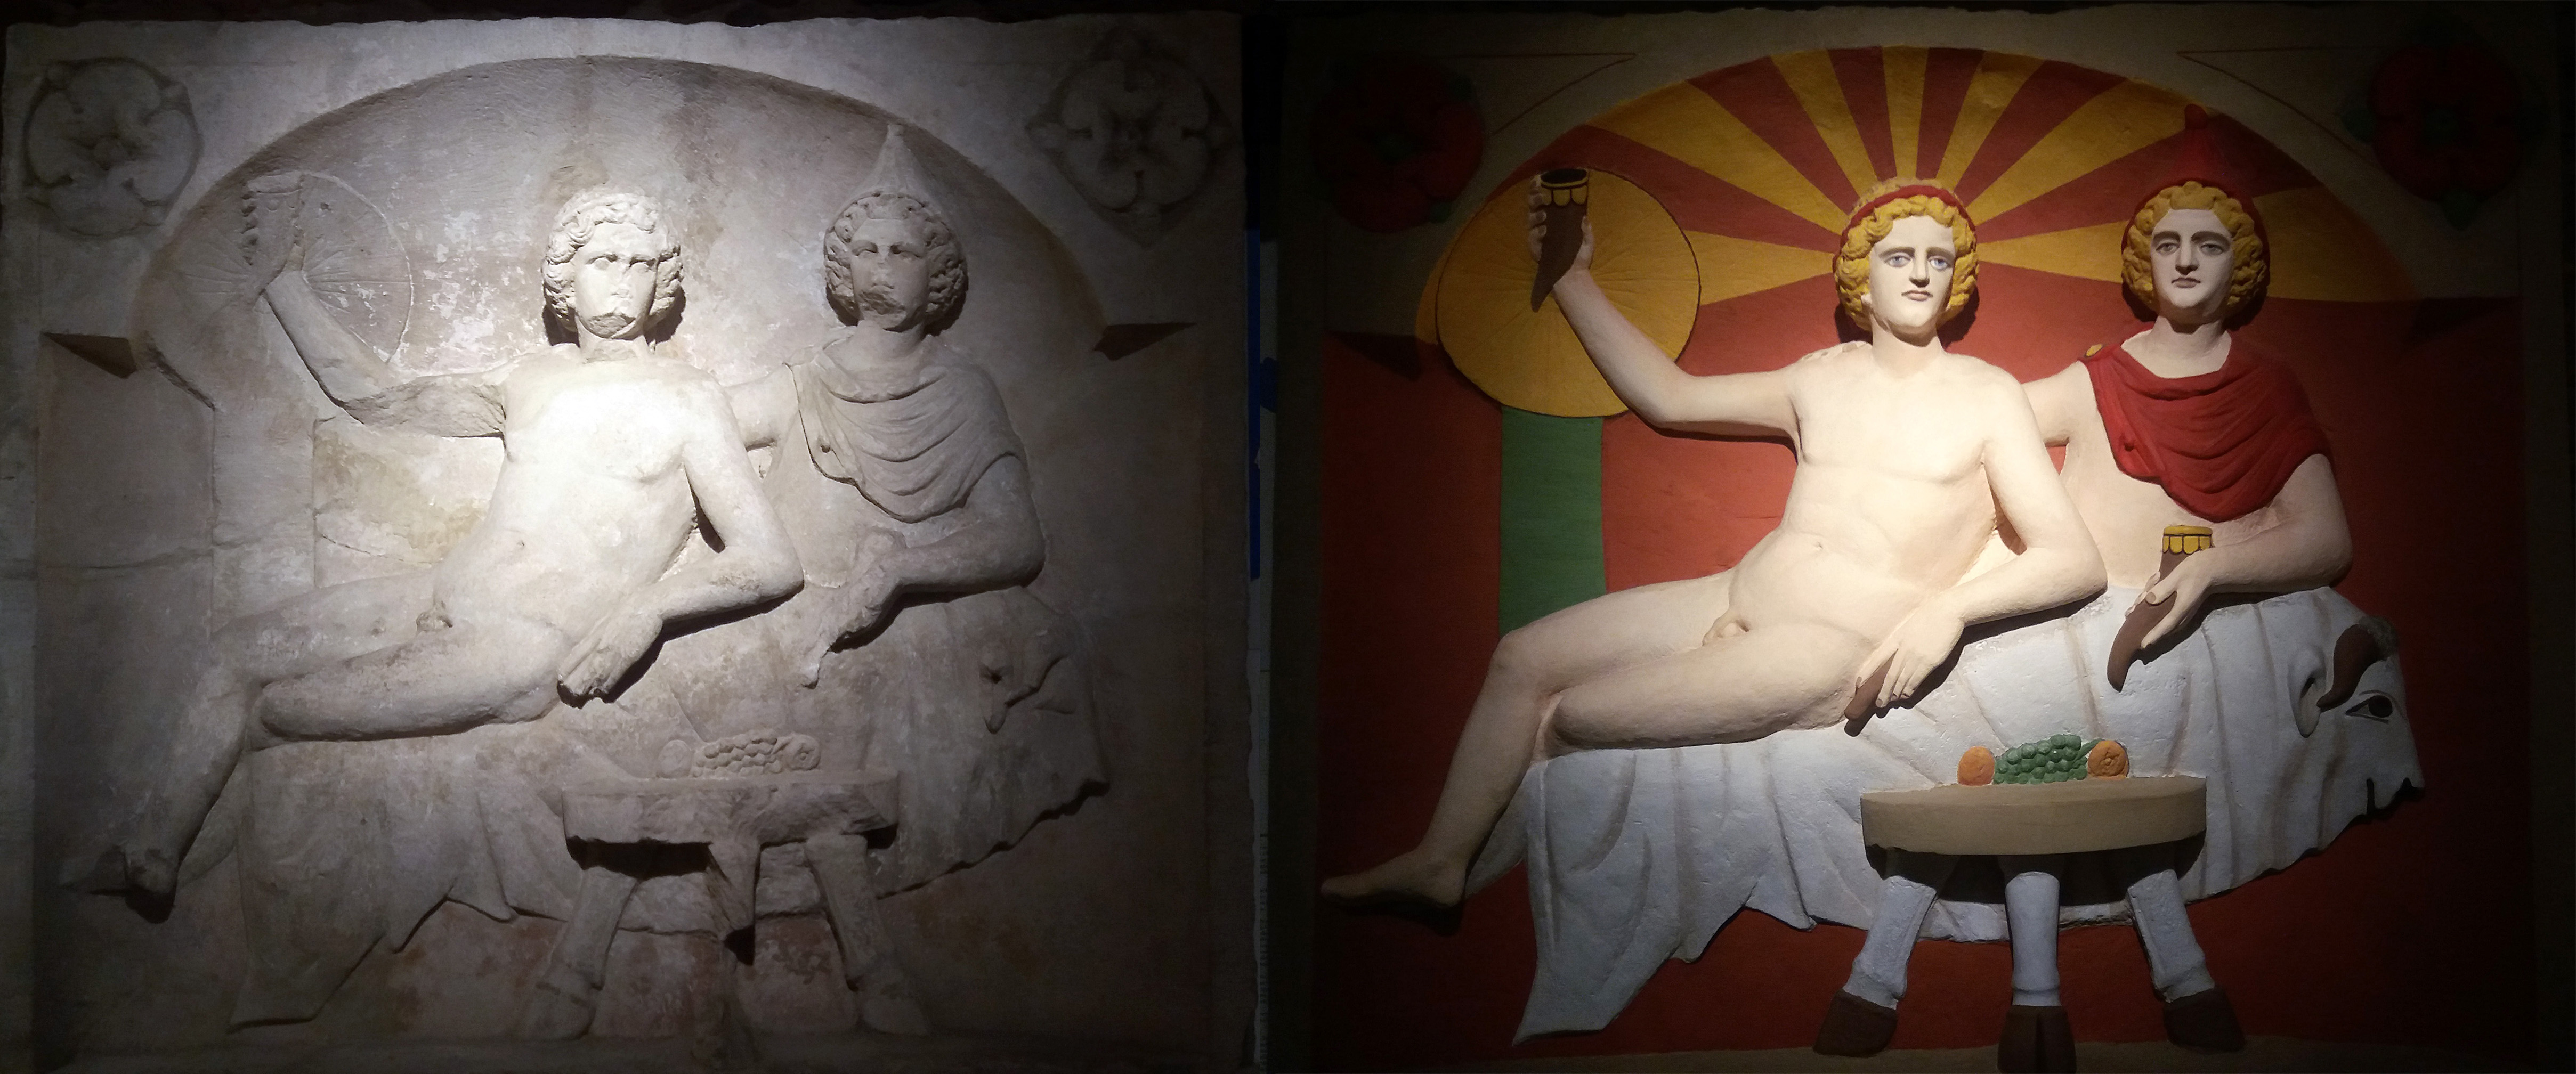 Fotod 1 ja 2: Mithrase ja Heliose / Soli ühine söömaaeg. Kultusreljeef Ladenburgi (Saksamaa) mithraeum’ist (Ladenburgi Arheoloogiamuuseum). Kõrval olev foto kujutab sama reljeefi tänapäevast koopiat, millele on lisatud värvid. On kindel, et kõik kultusreljeefid olid algselt värvitud (fotod: Jaan Lahe).